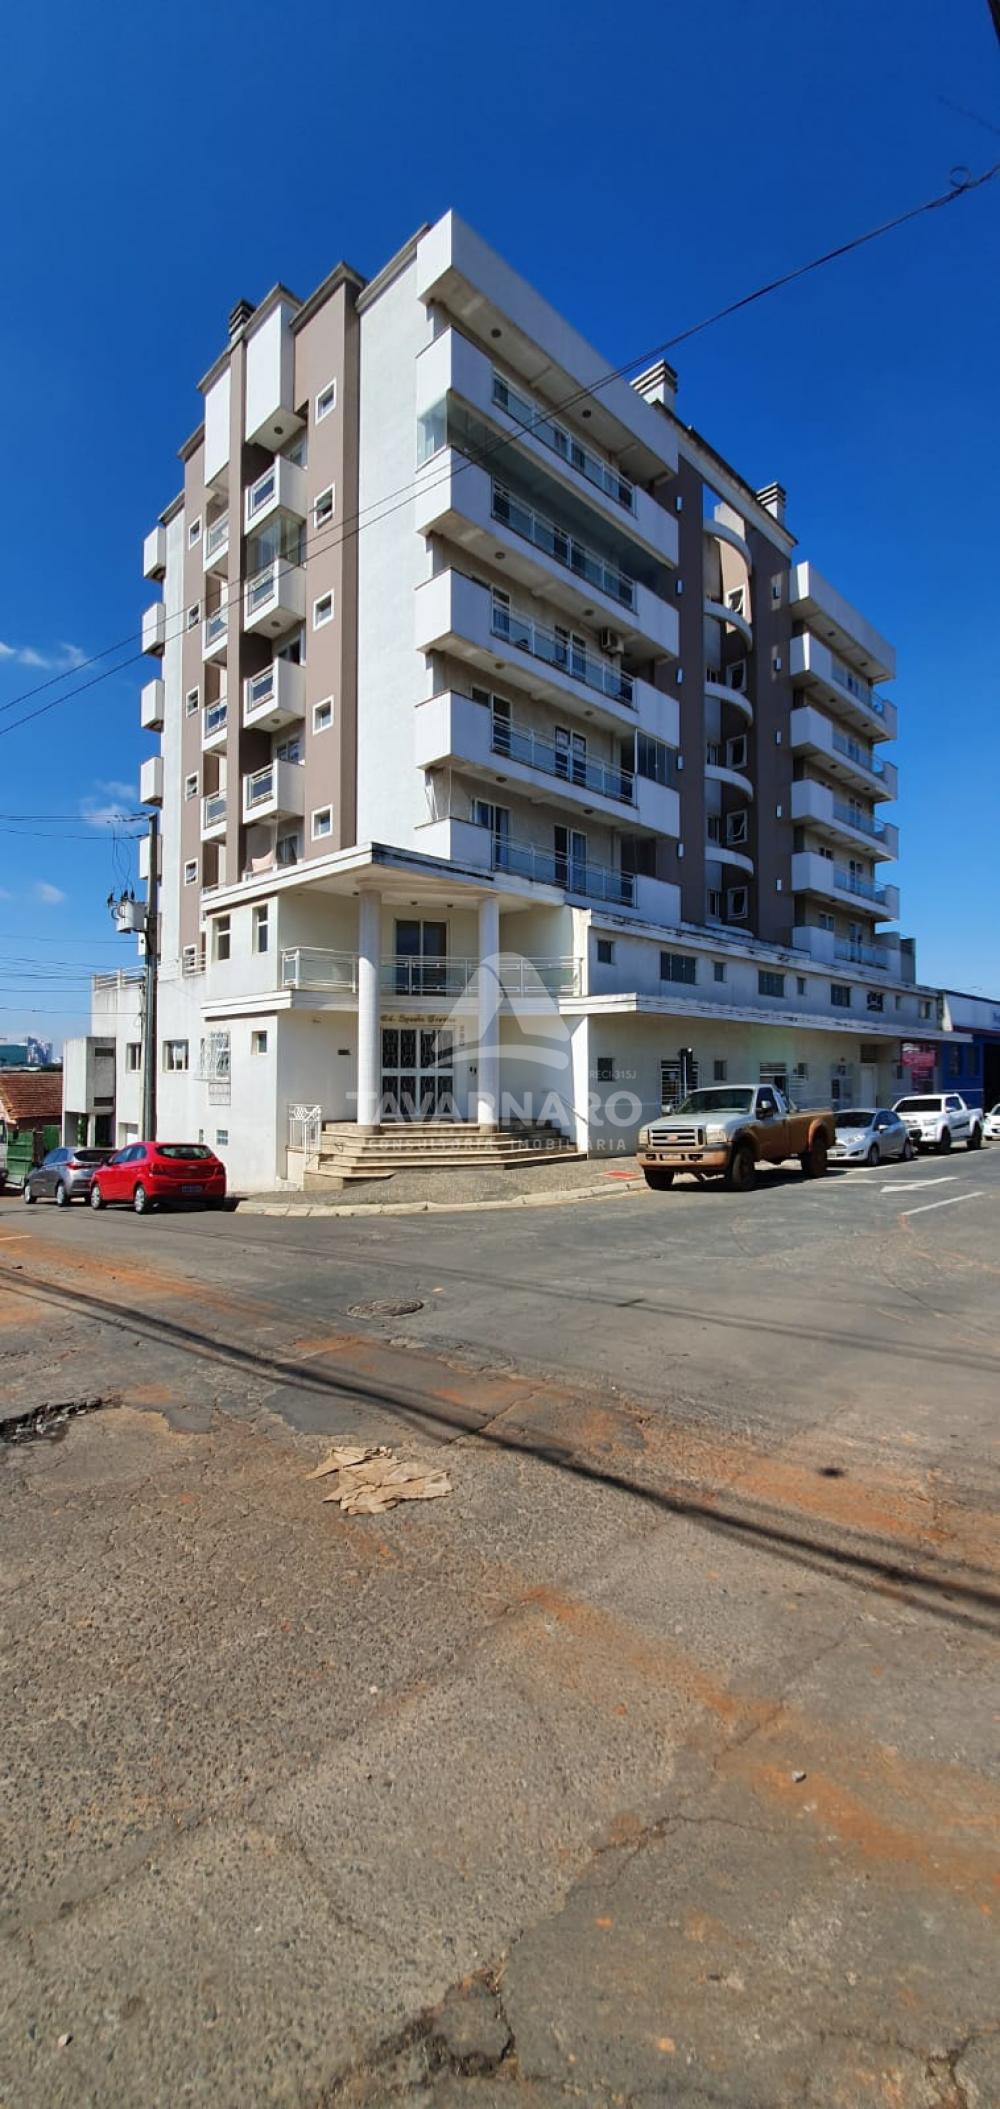 Comprar Apartamento / Padrão em Ponta Grossa R$ 490.000,00 - Foto 2